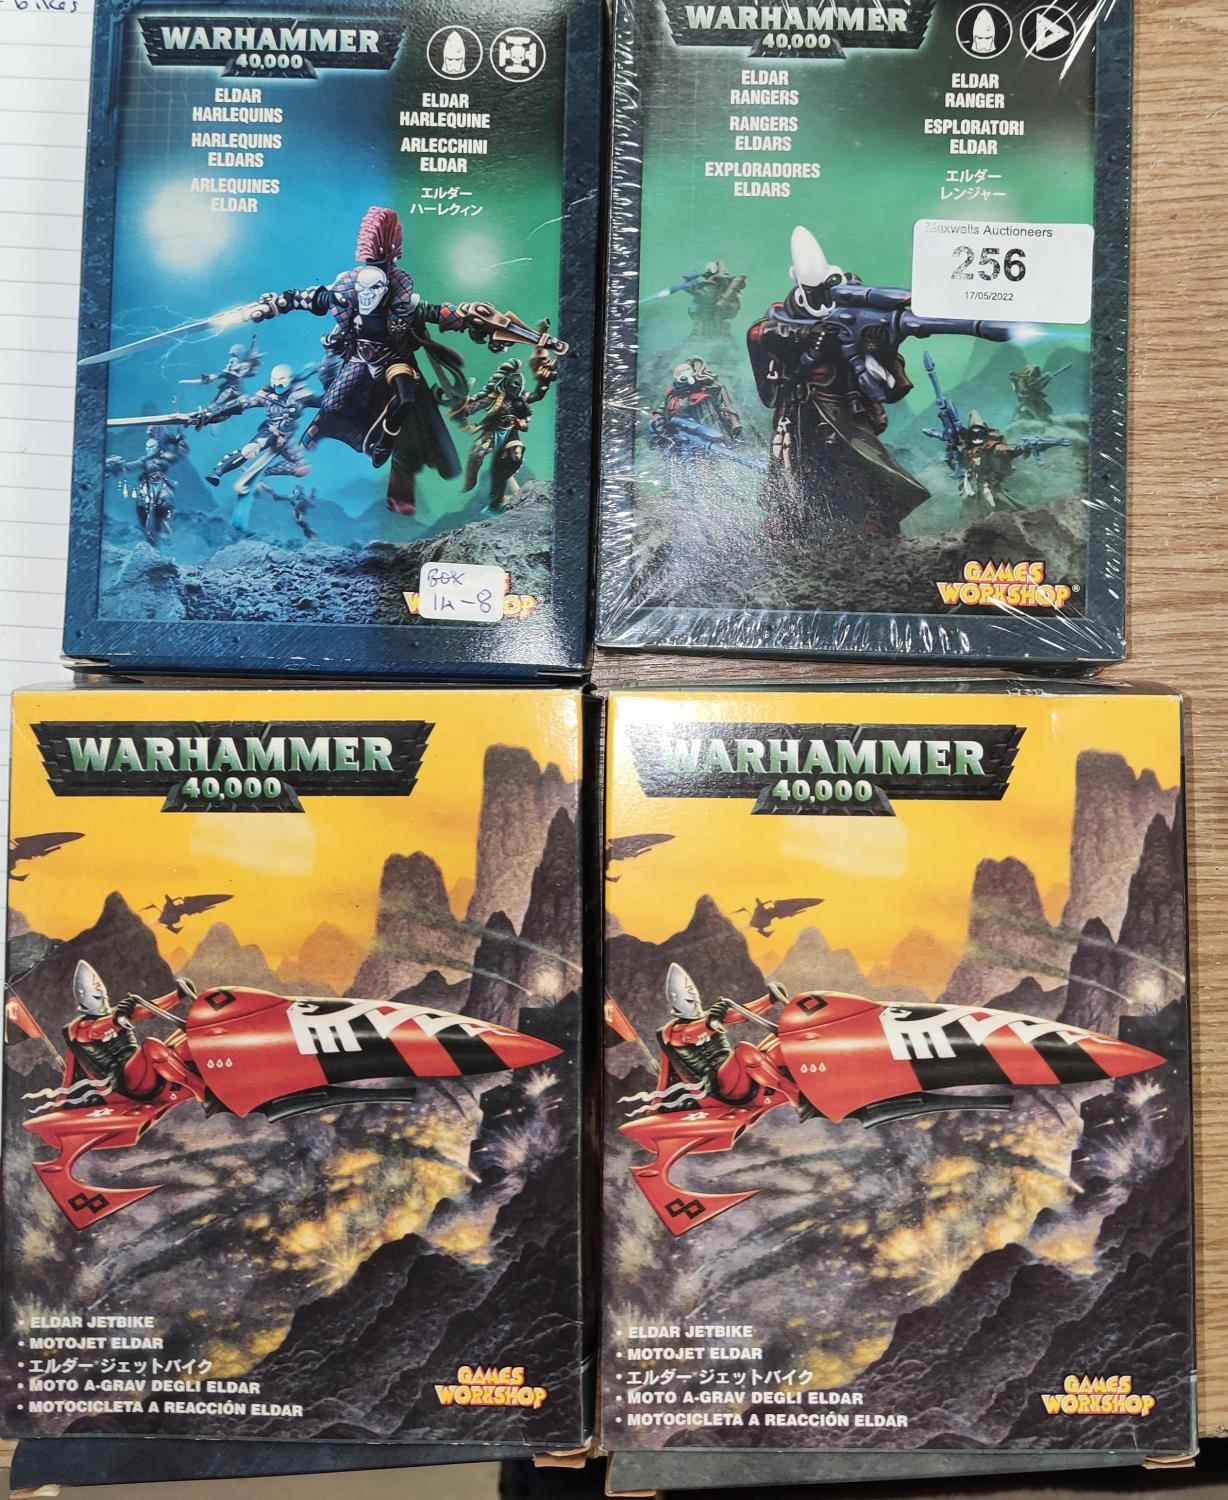 Games Workshop Citadel Miniatures for Warhammer 40,000 - a bx of 6 Eldar Harlequins and a sealed box